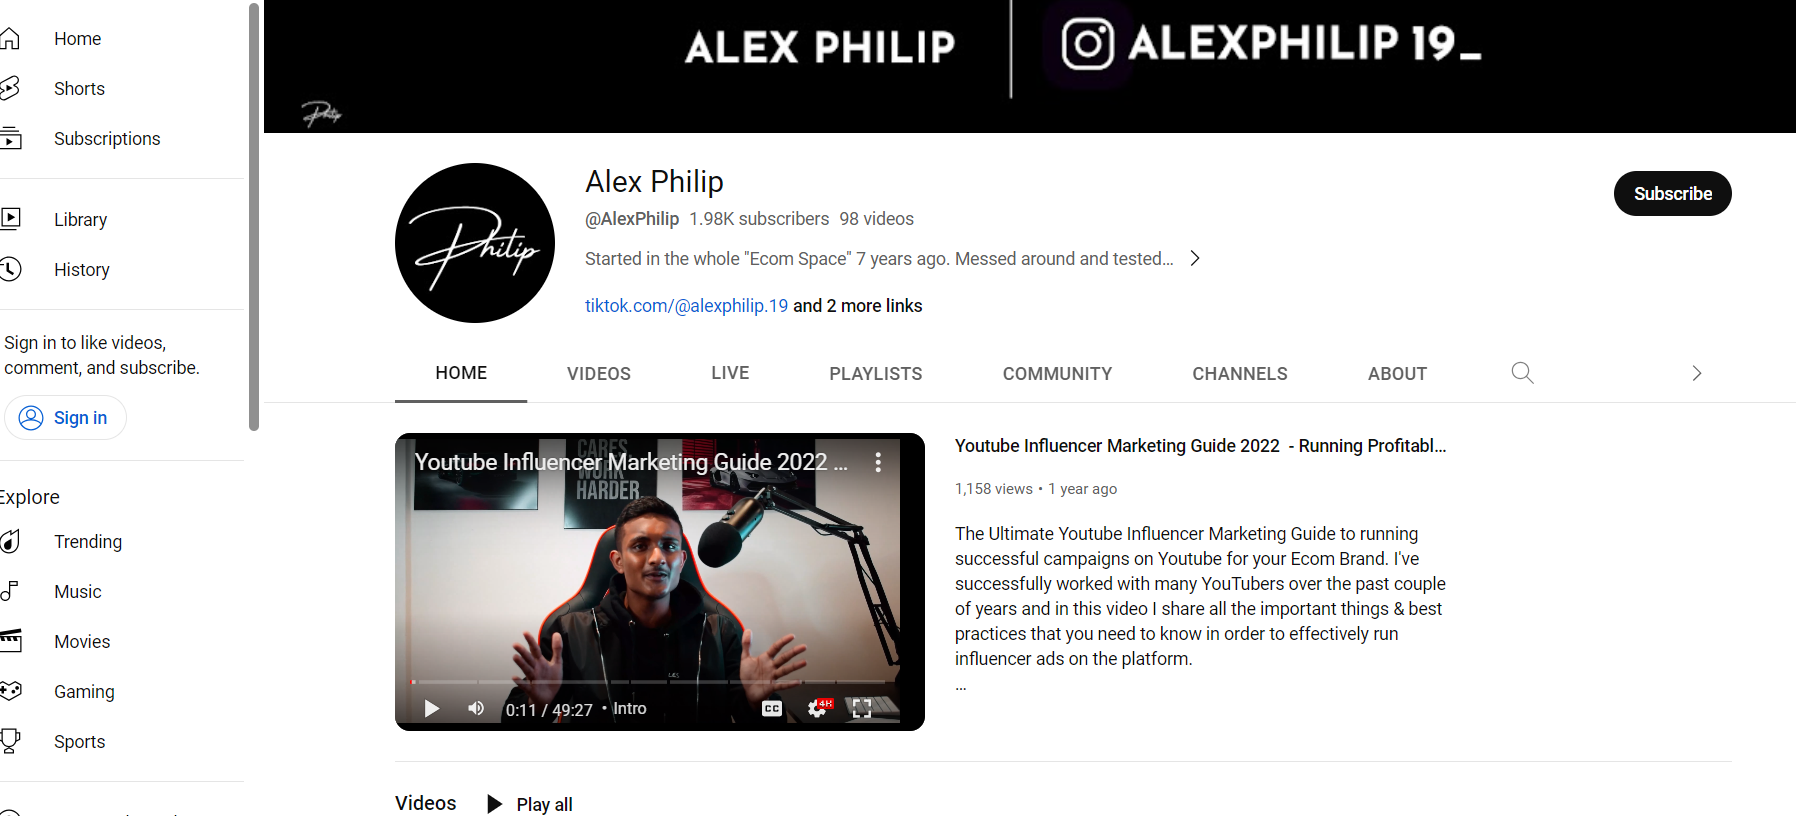 alex phllip